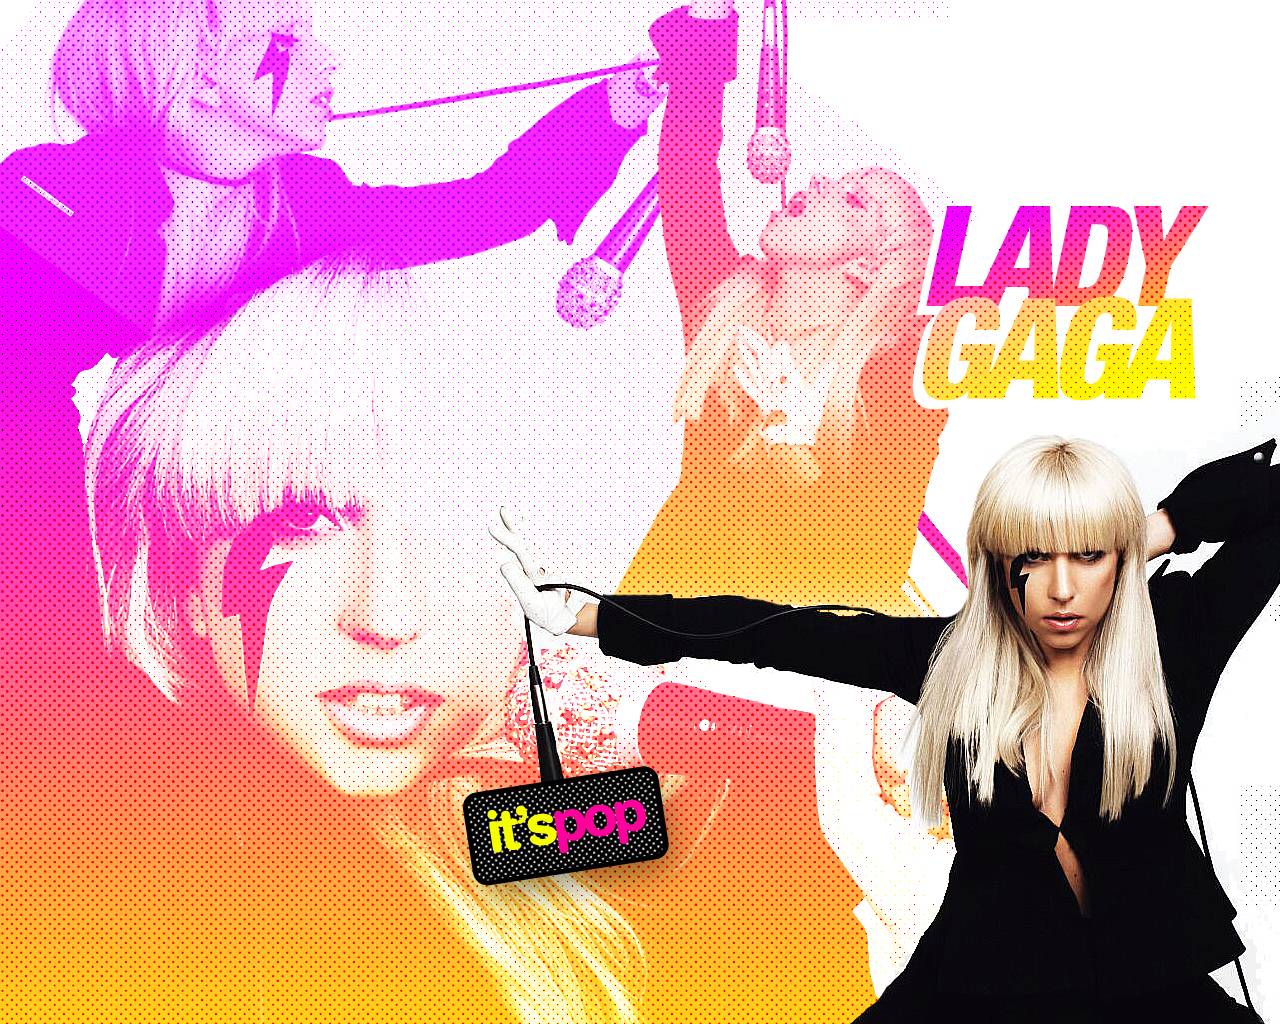 Color Full Lady Gaga Wallpaper Desktop #7494 Wallpaper ...